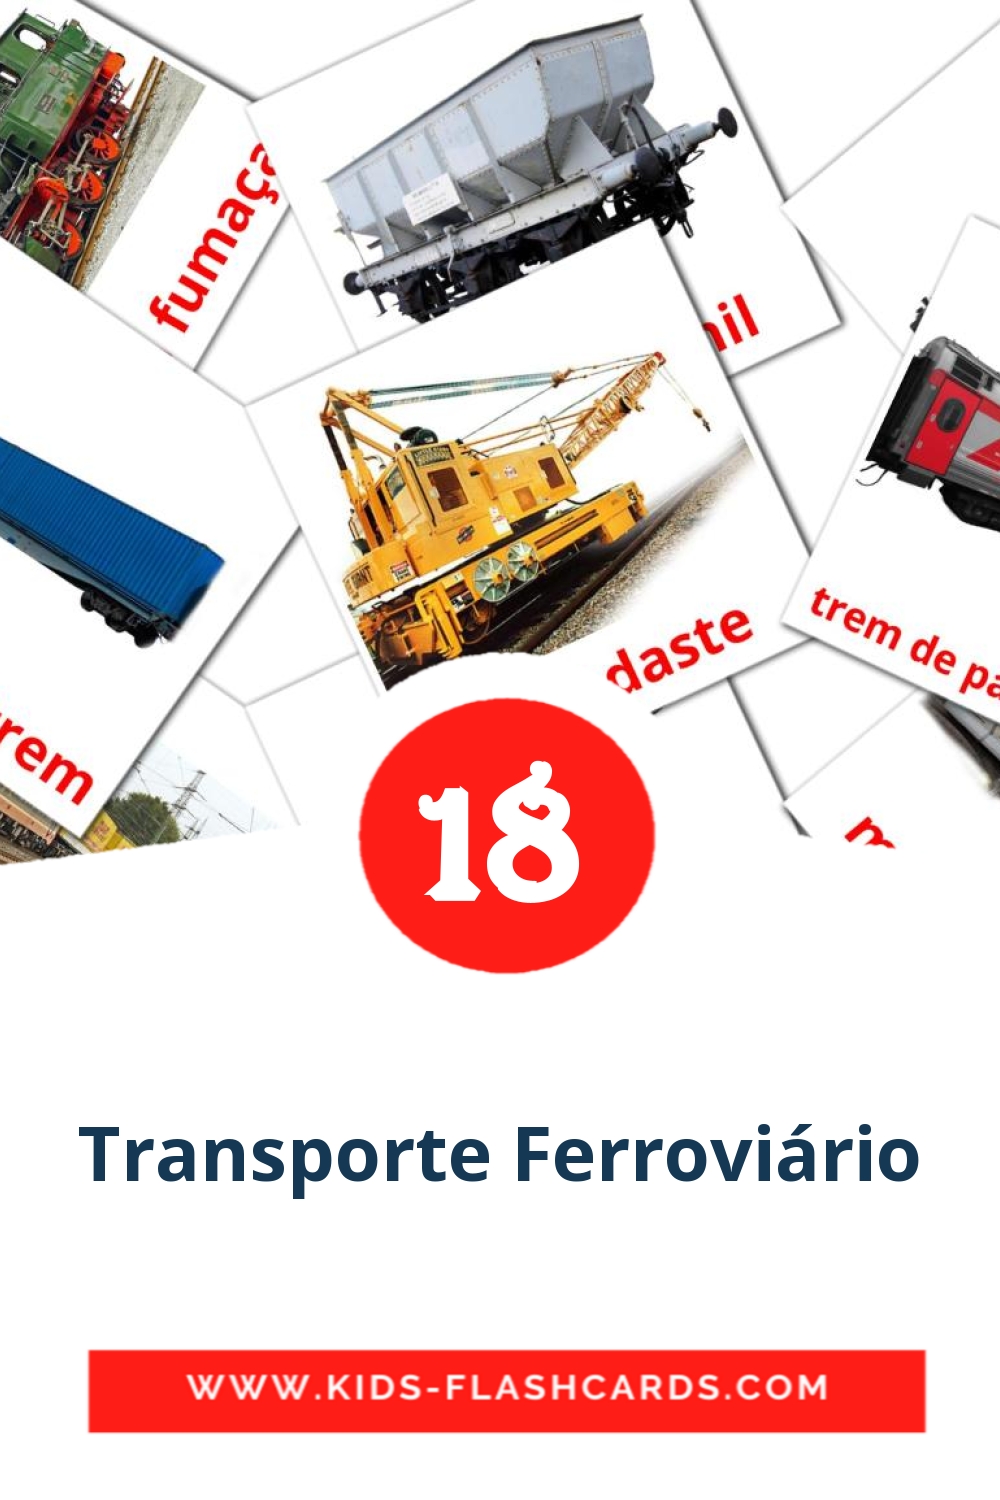 18 Transporte Ferroviário Bildkarten für den Kindergarten auf Portugiesisch